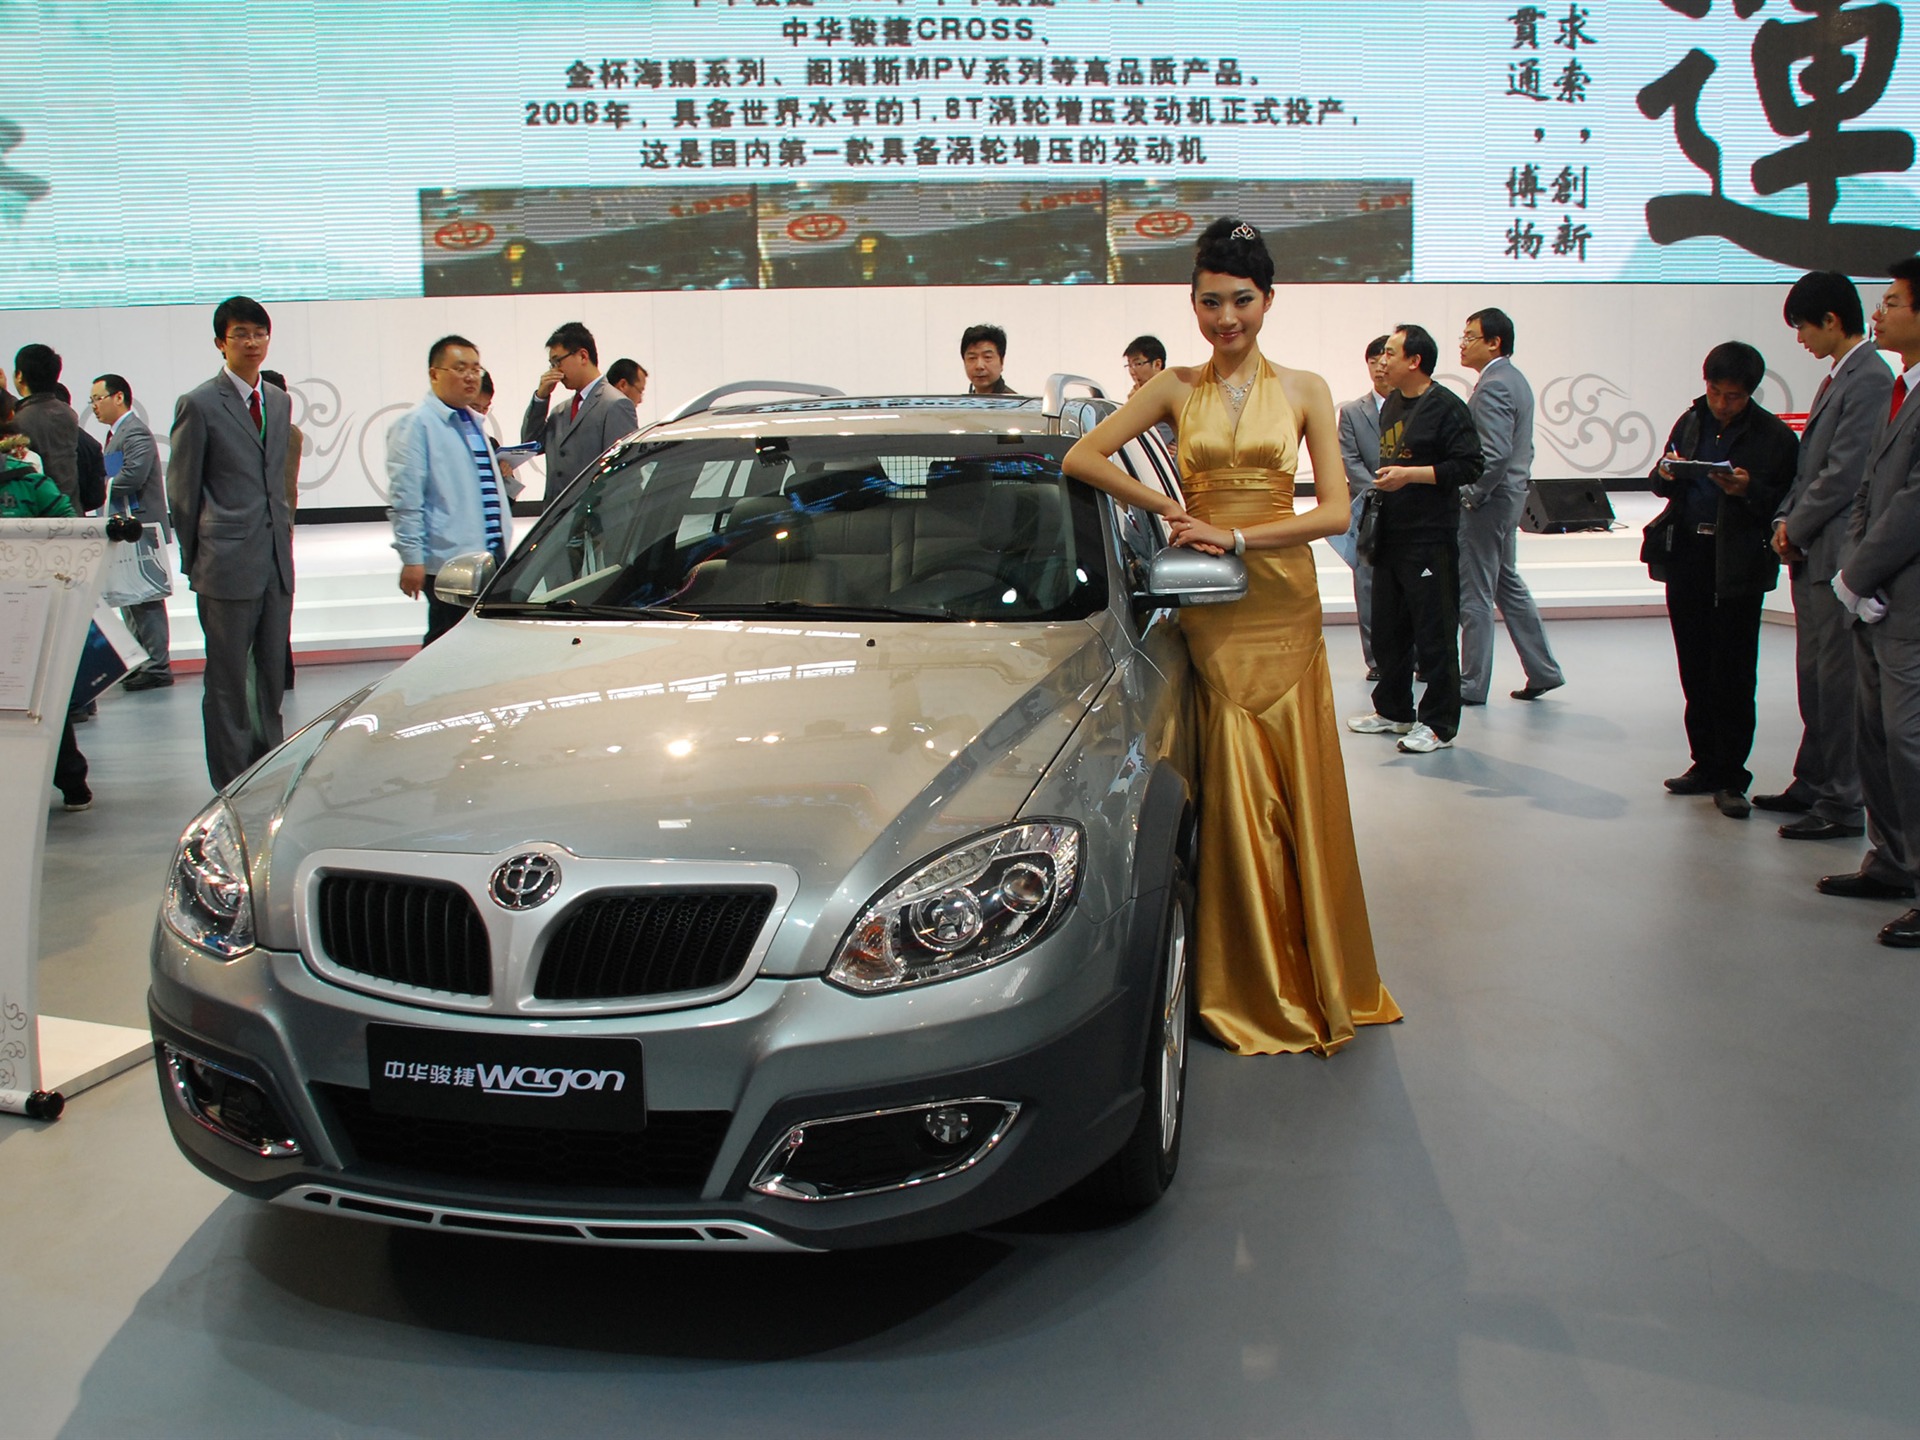 2010北京国际车展(一) (z321x123作品)18 - 1920x1440